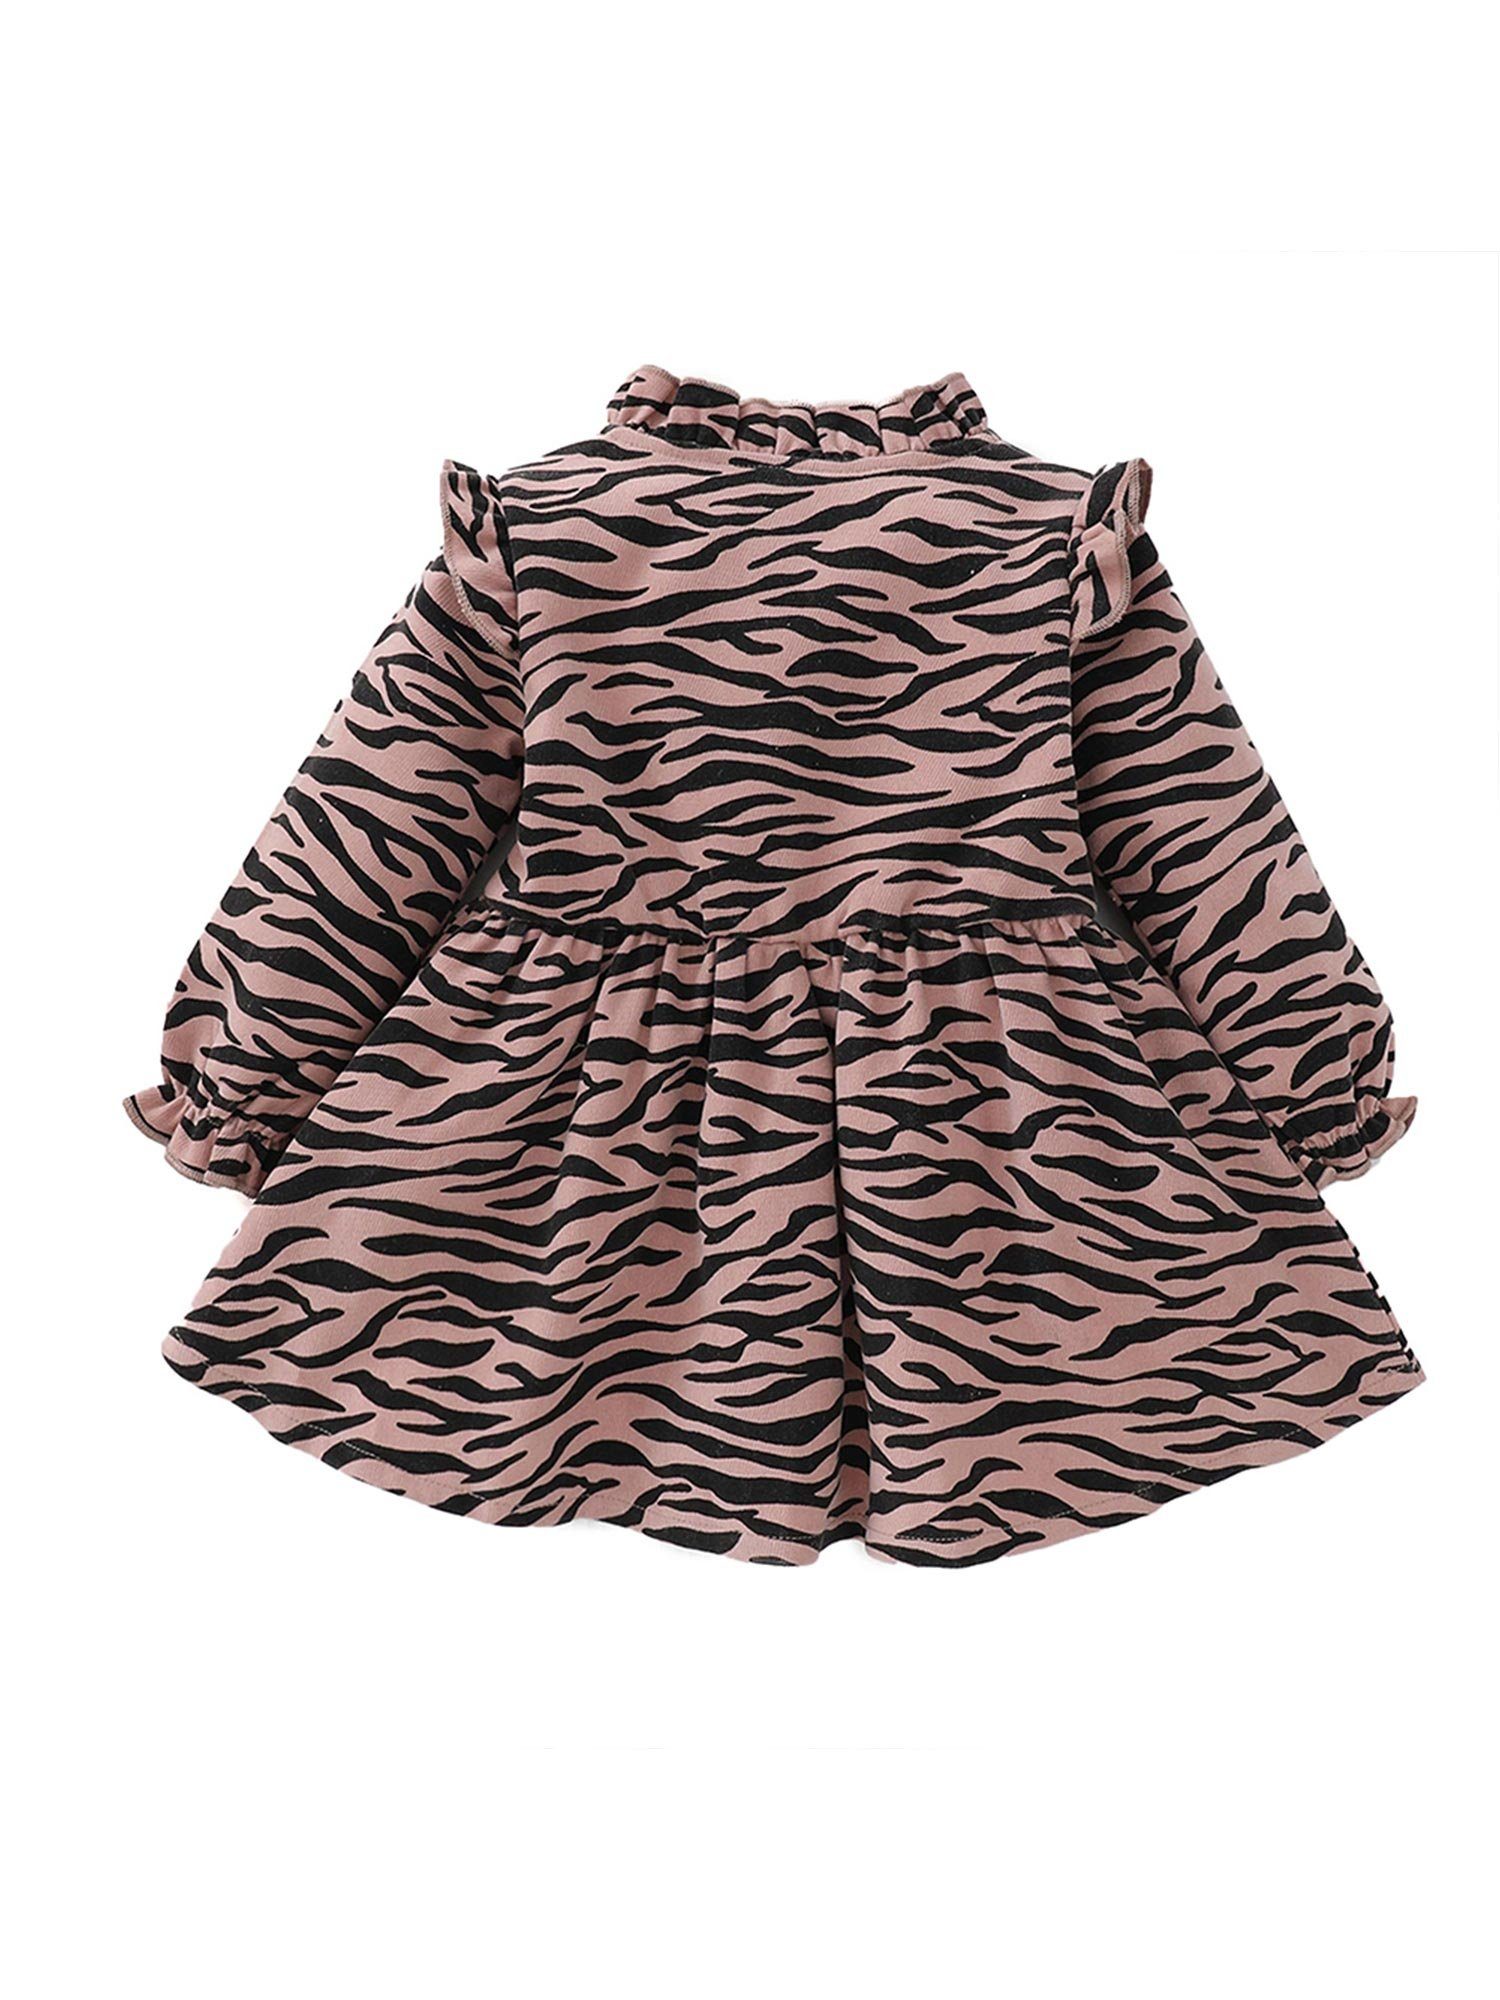 Kinder Mädchen (Gr. 50 - 92) Lapastyle A-Linien-Kleid Lange Ärmel A-Linien-Kleid mit Zebramuster (Nur ein Kleid, keine Tasche)